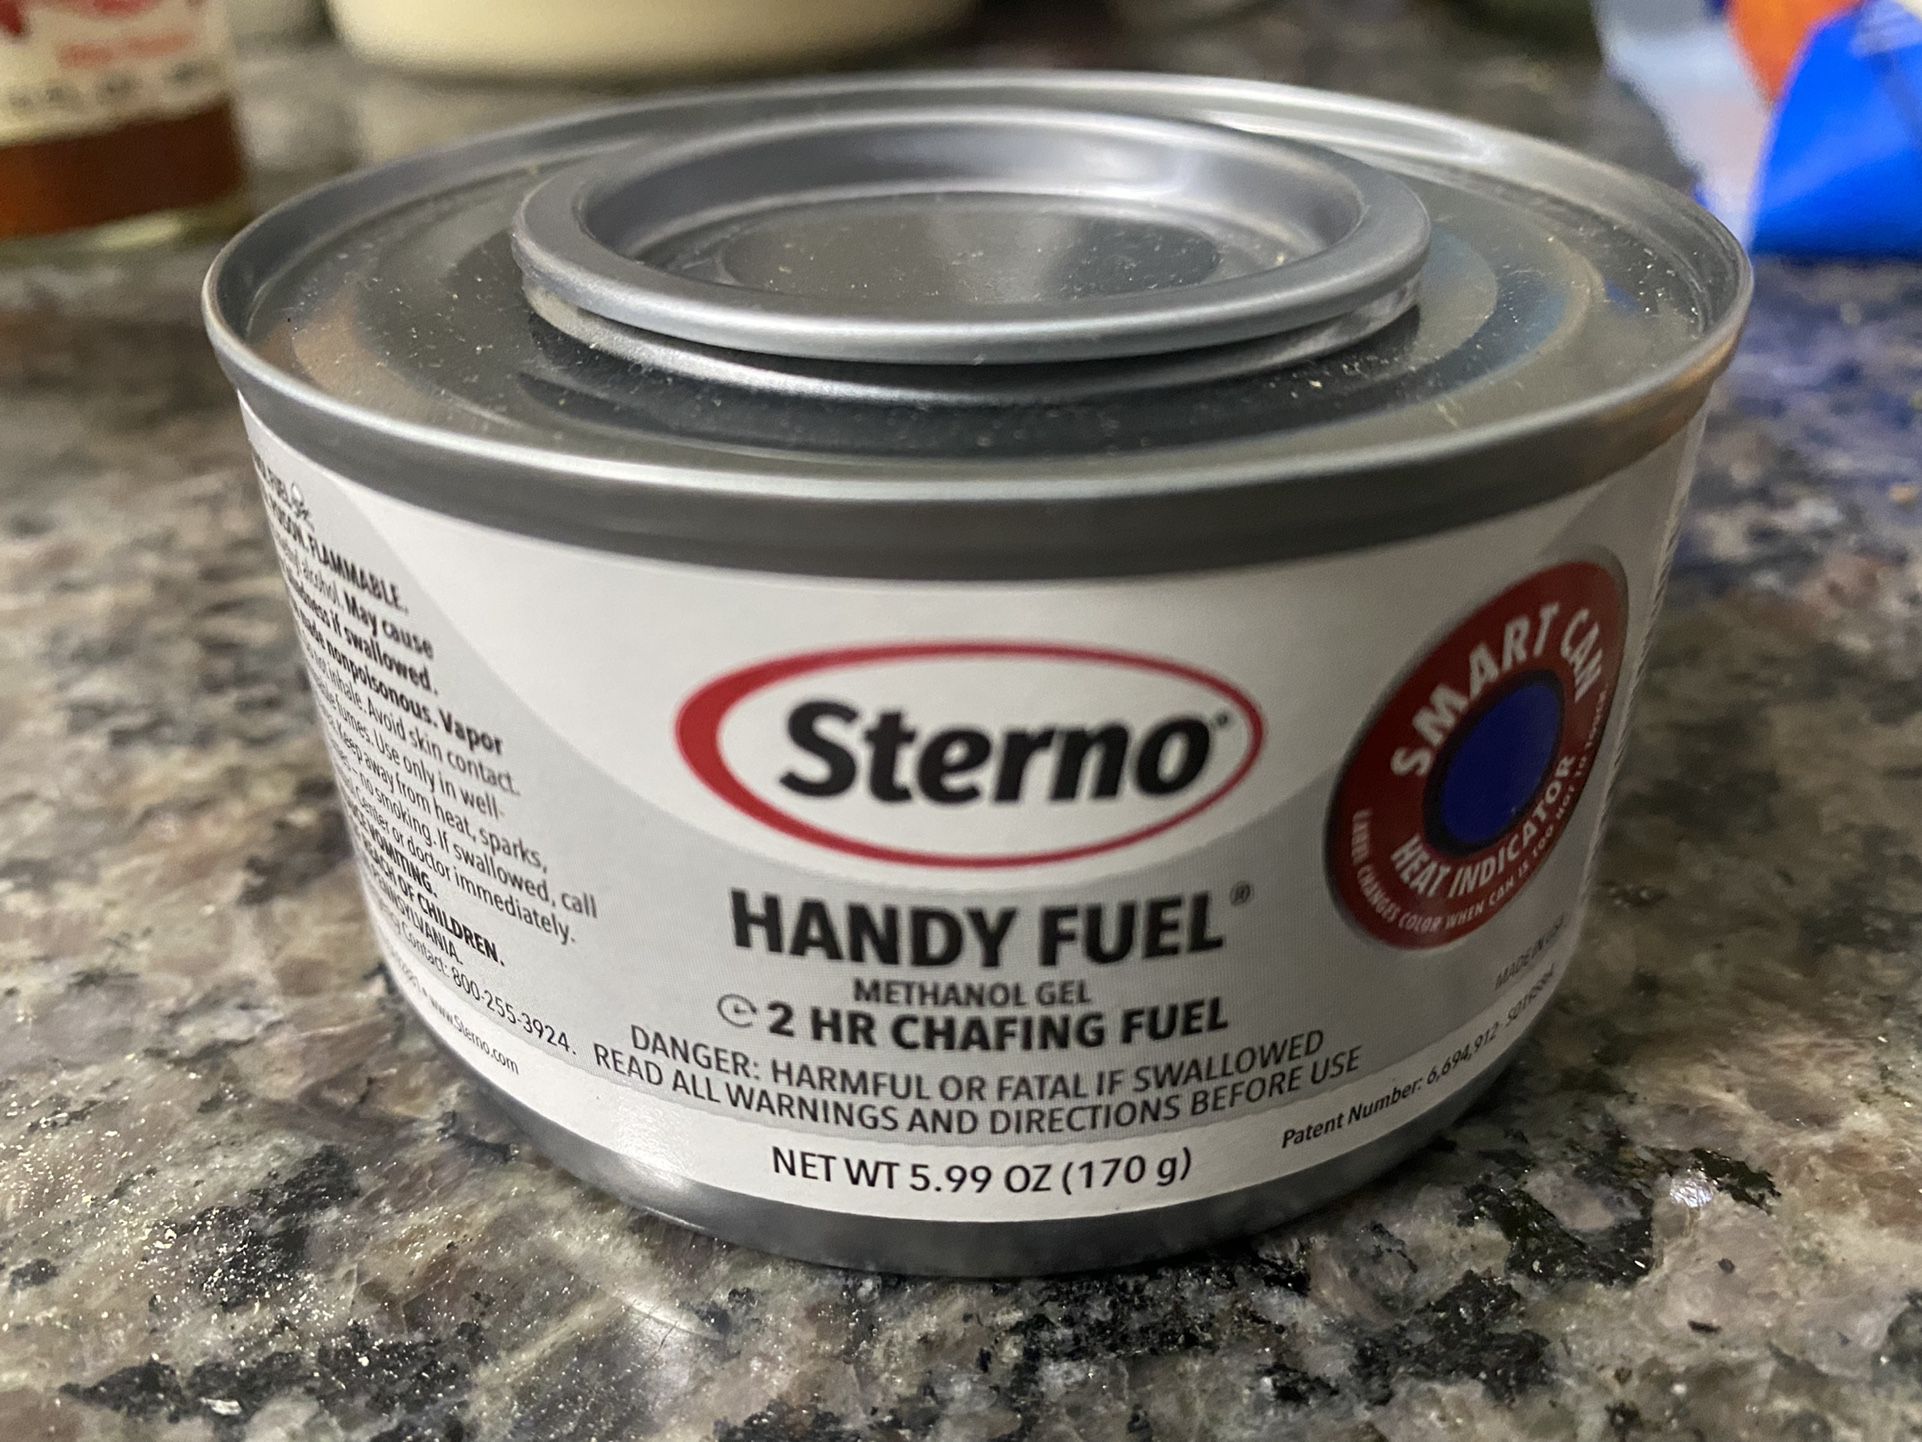 Sterno Chafing fuel - Handy fuel - Methanol Gel